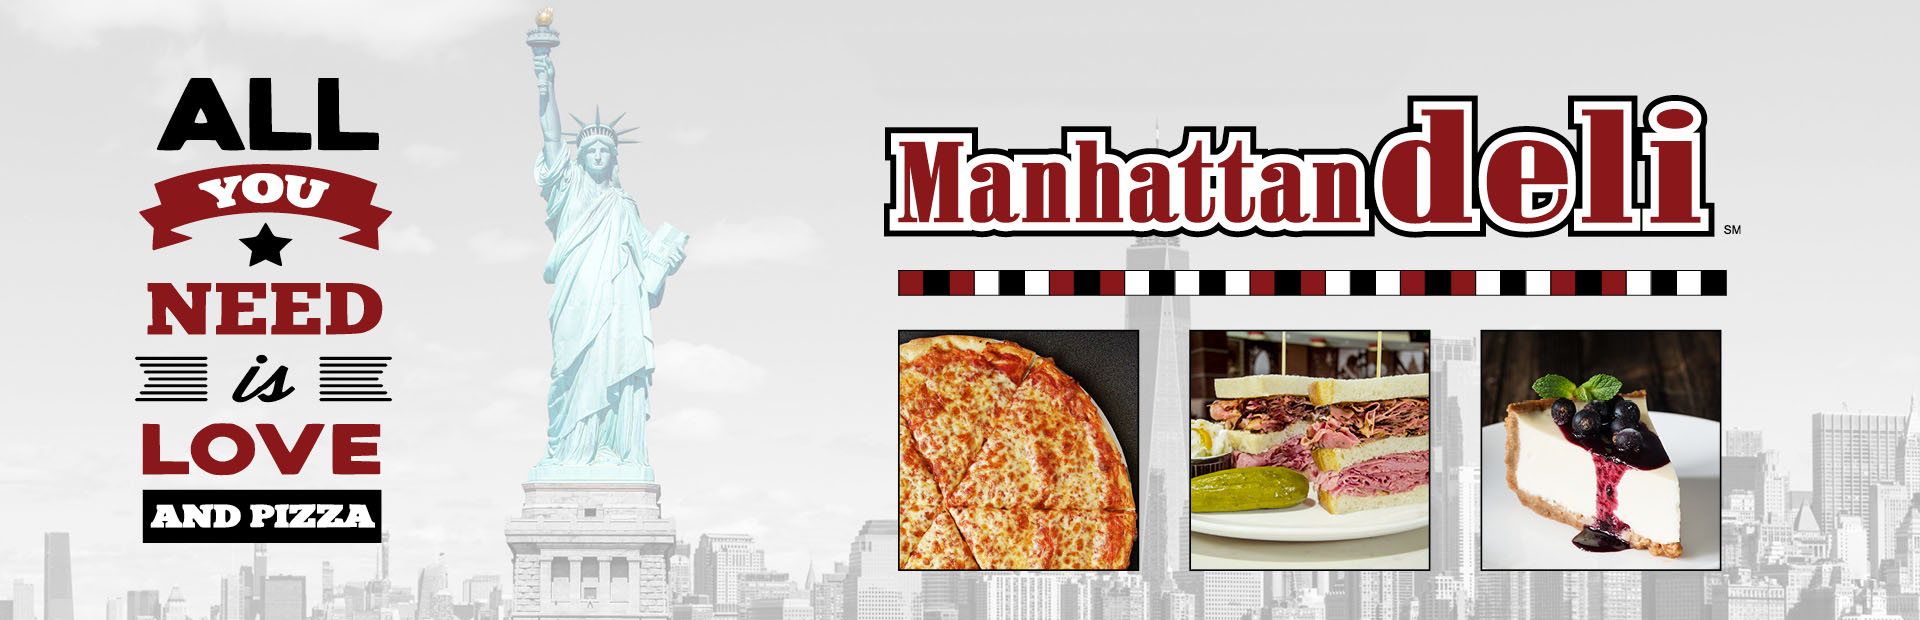 Discover the NEW Manhattan Deli